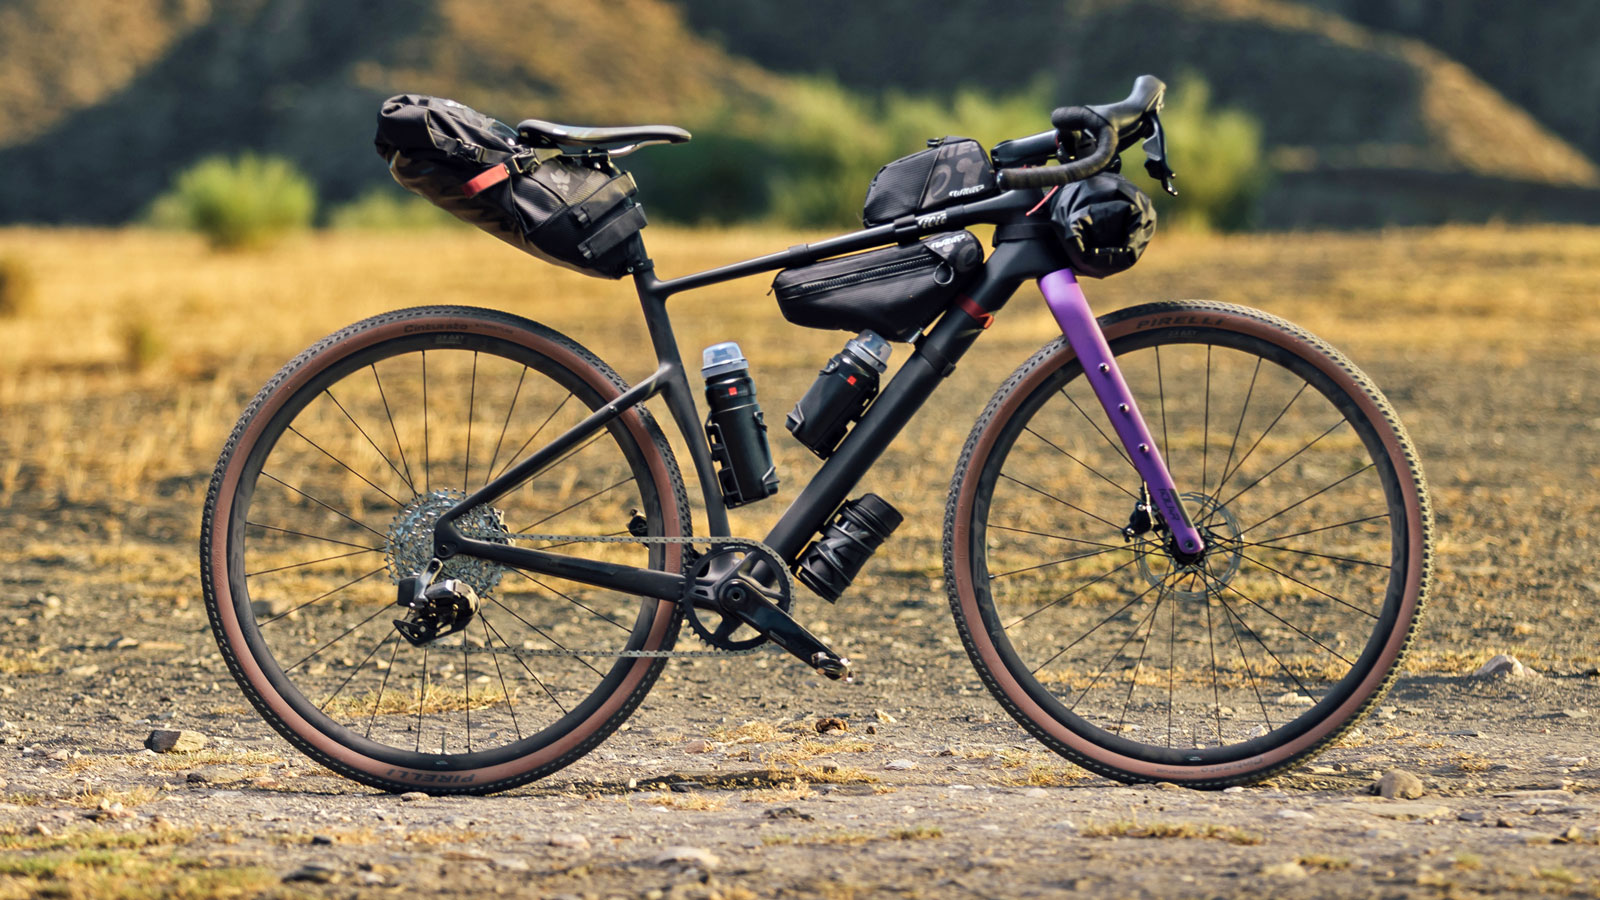 Wilier Adlar lightweight carbon bikepacking gravel touring bike, rackless light bikepacking